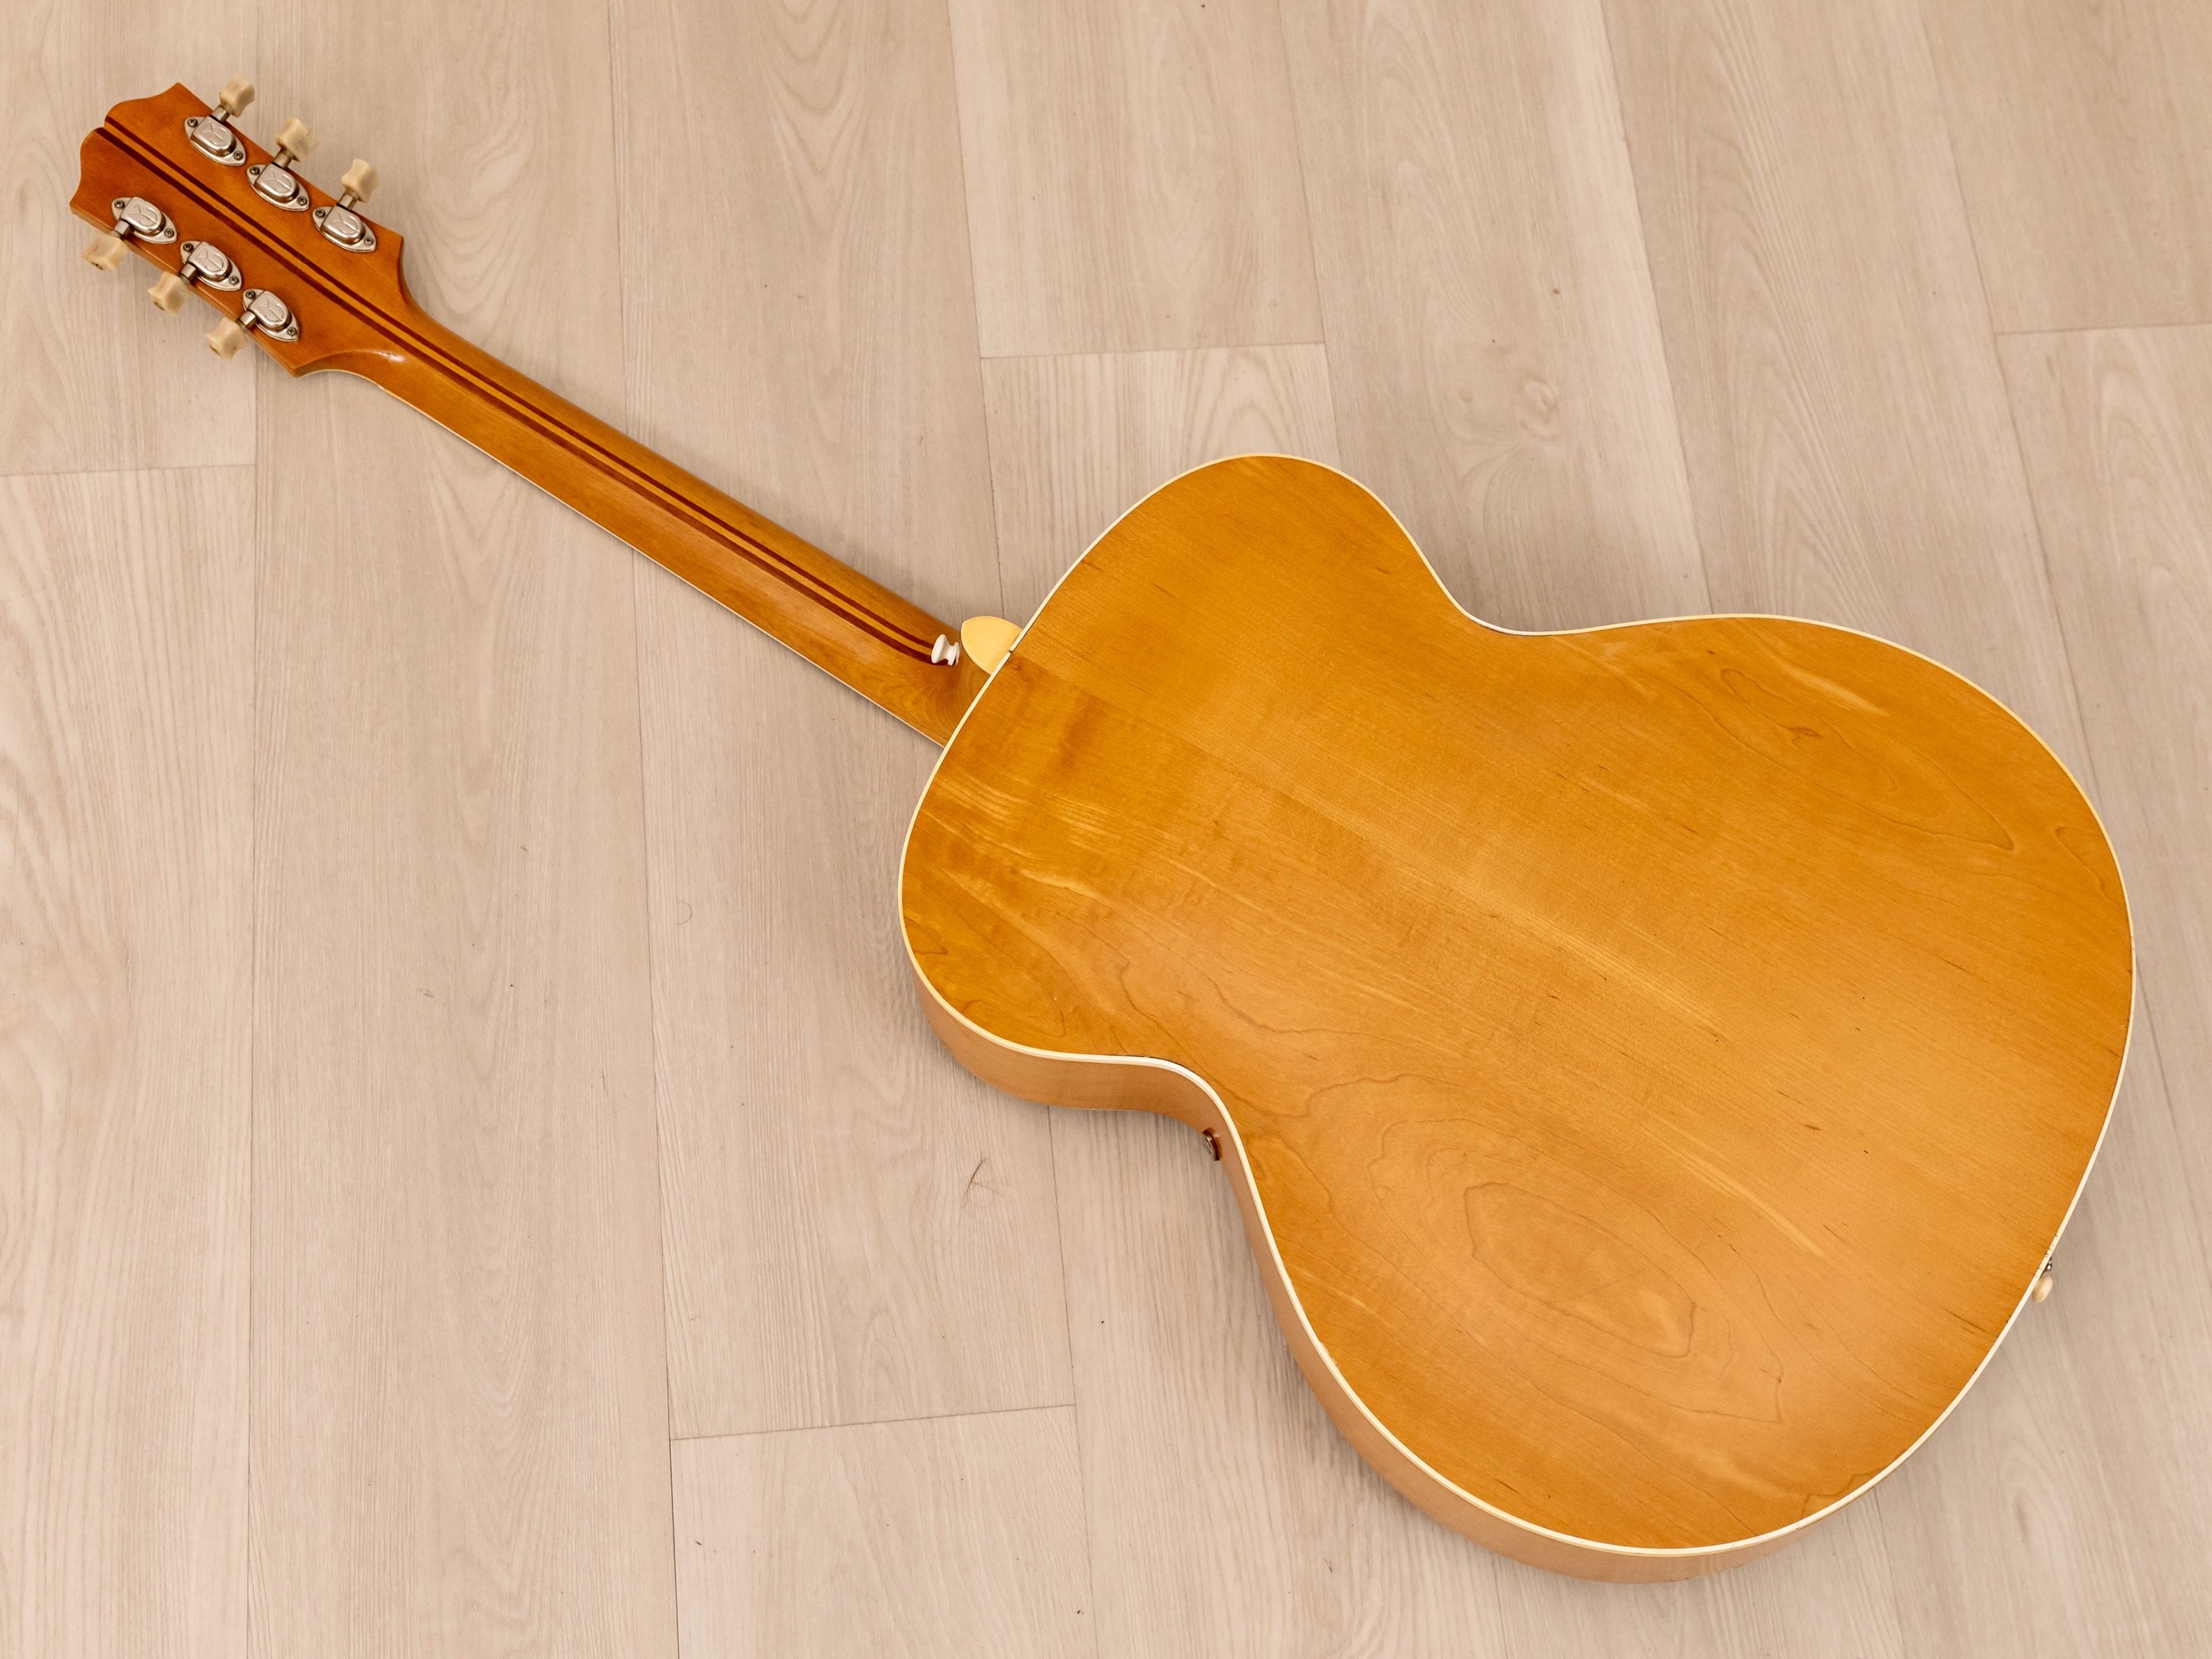 1946 Epiphone Triumph Vintage Archtop Acoustic Guitar Blonde w/ Case